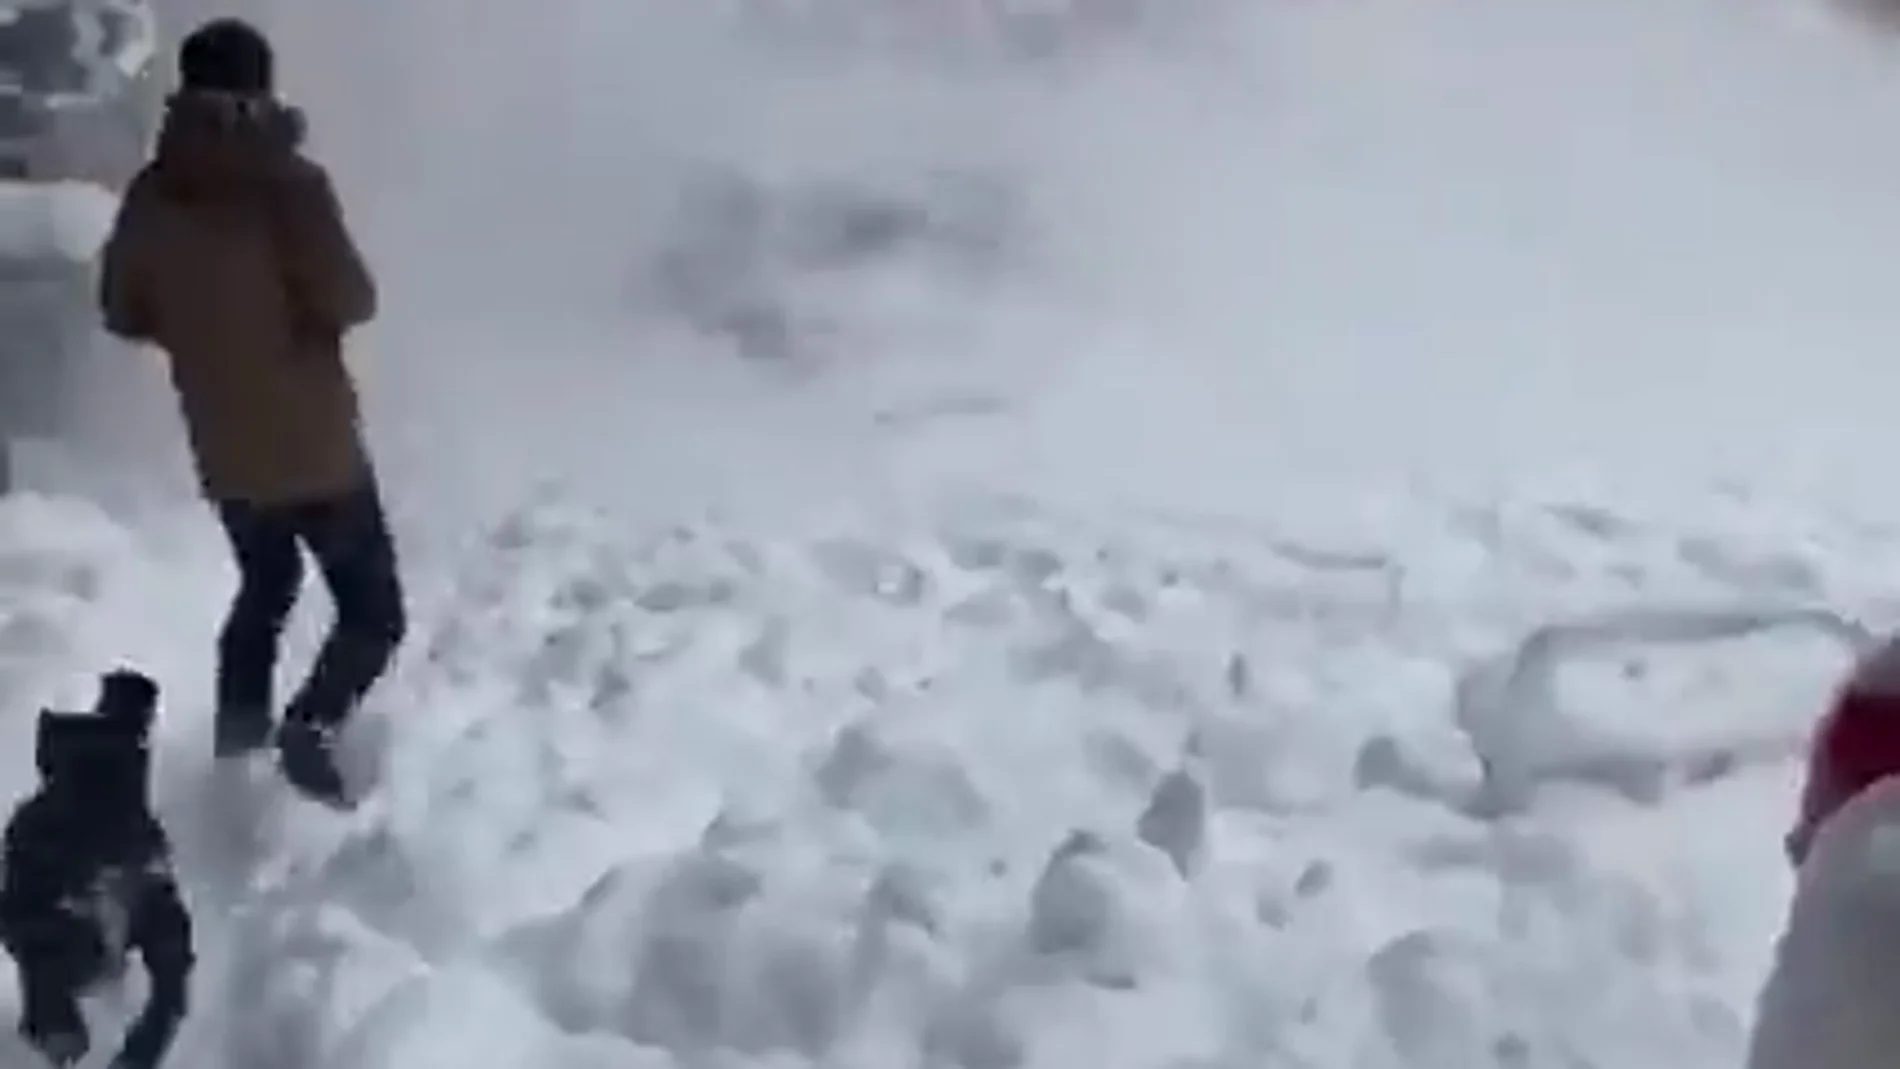 Impactantes imágenes del peligro de la nieve acumulada en las cornisas: casi quedan sepultados bajo la nieve